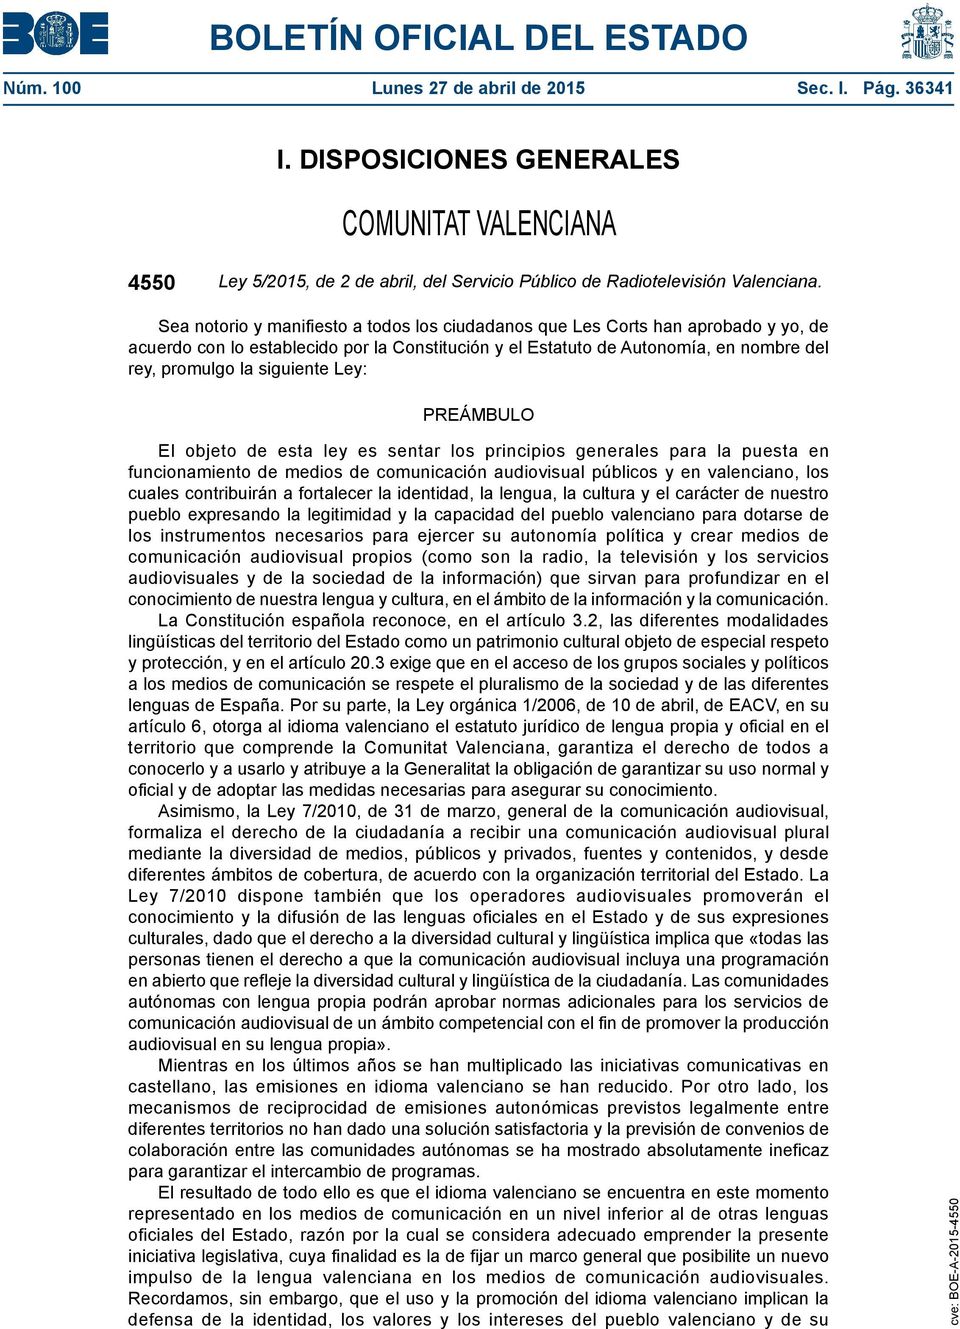 Ley: PREÁMBULO El objeto de esta ley es sentar los principios generales para la puesta en funcionamiento de medios de comunicación audiovisual públicos y en valenciano, los cuales contribuirán a